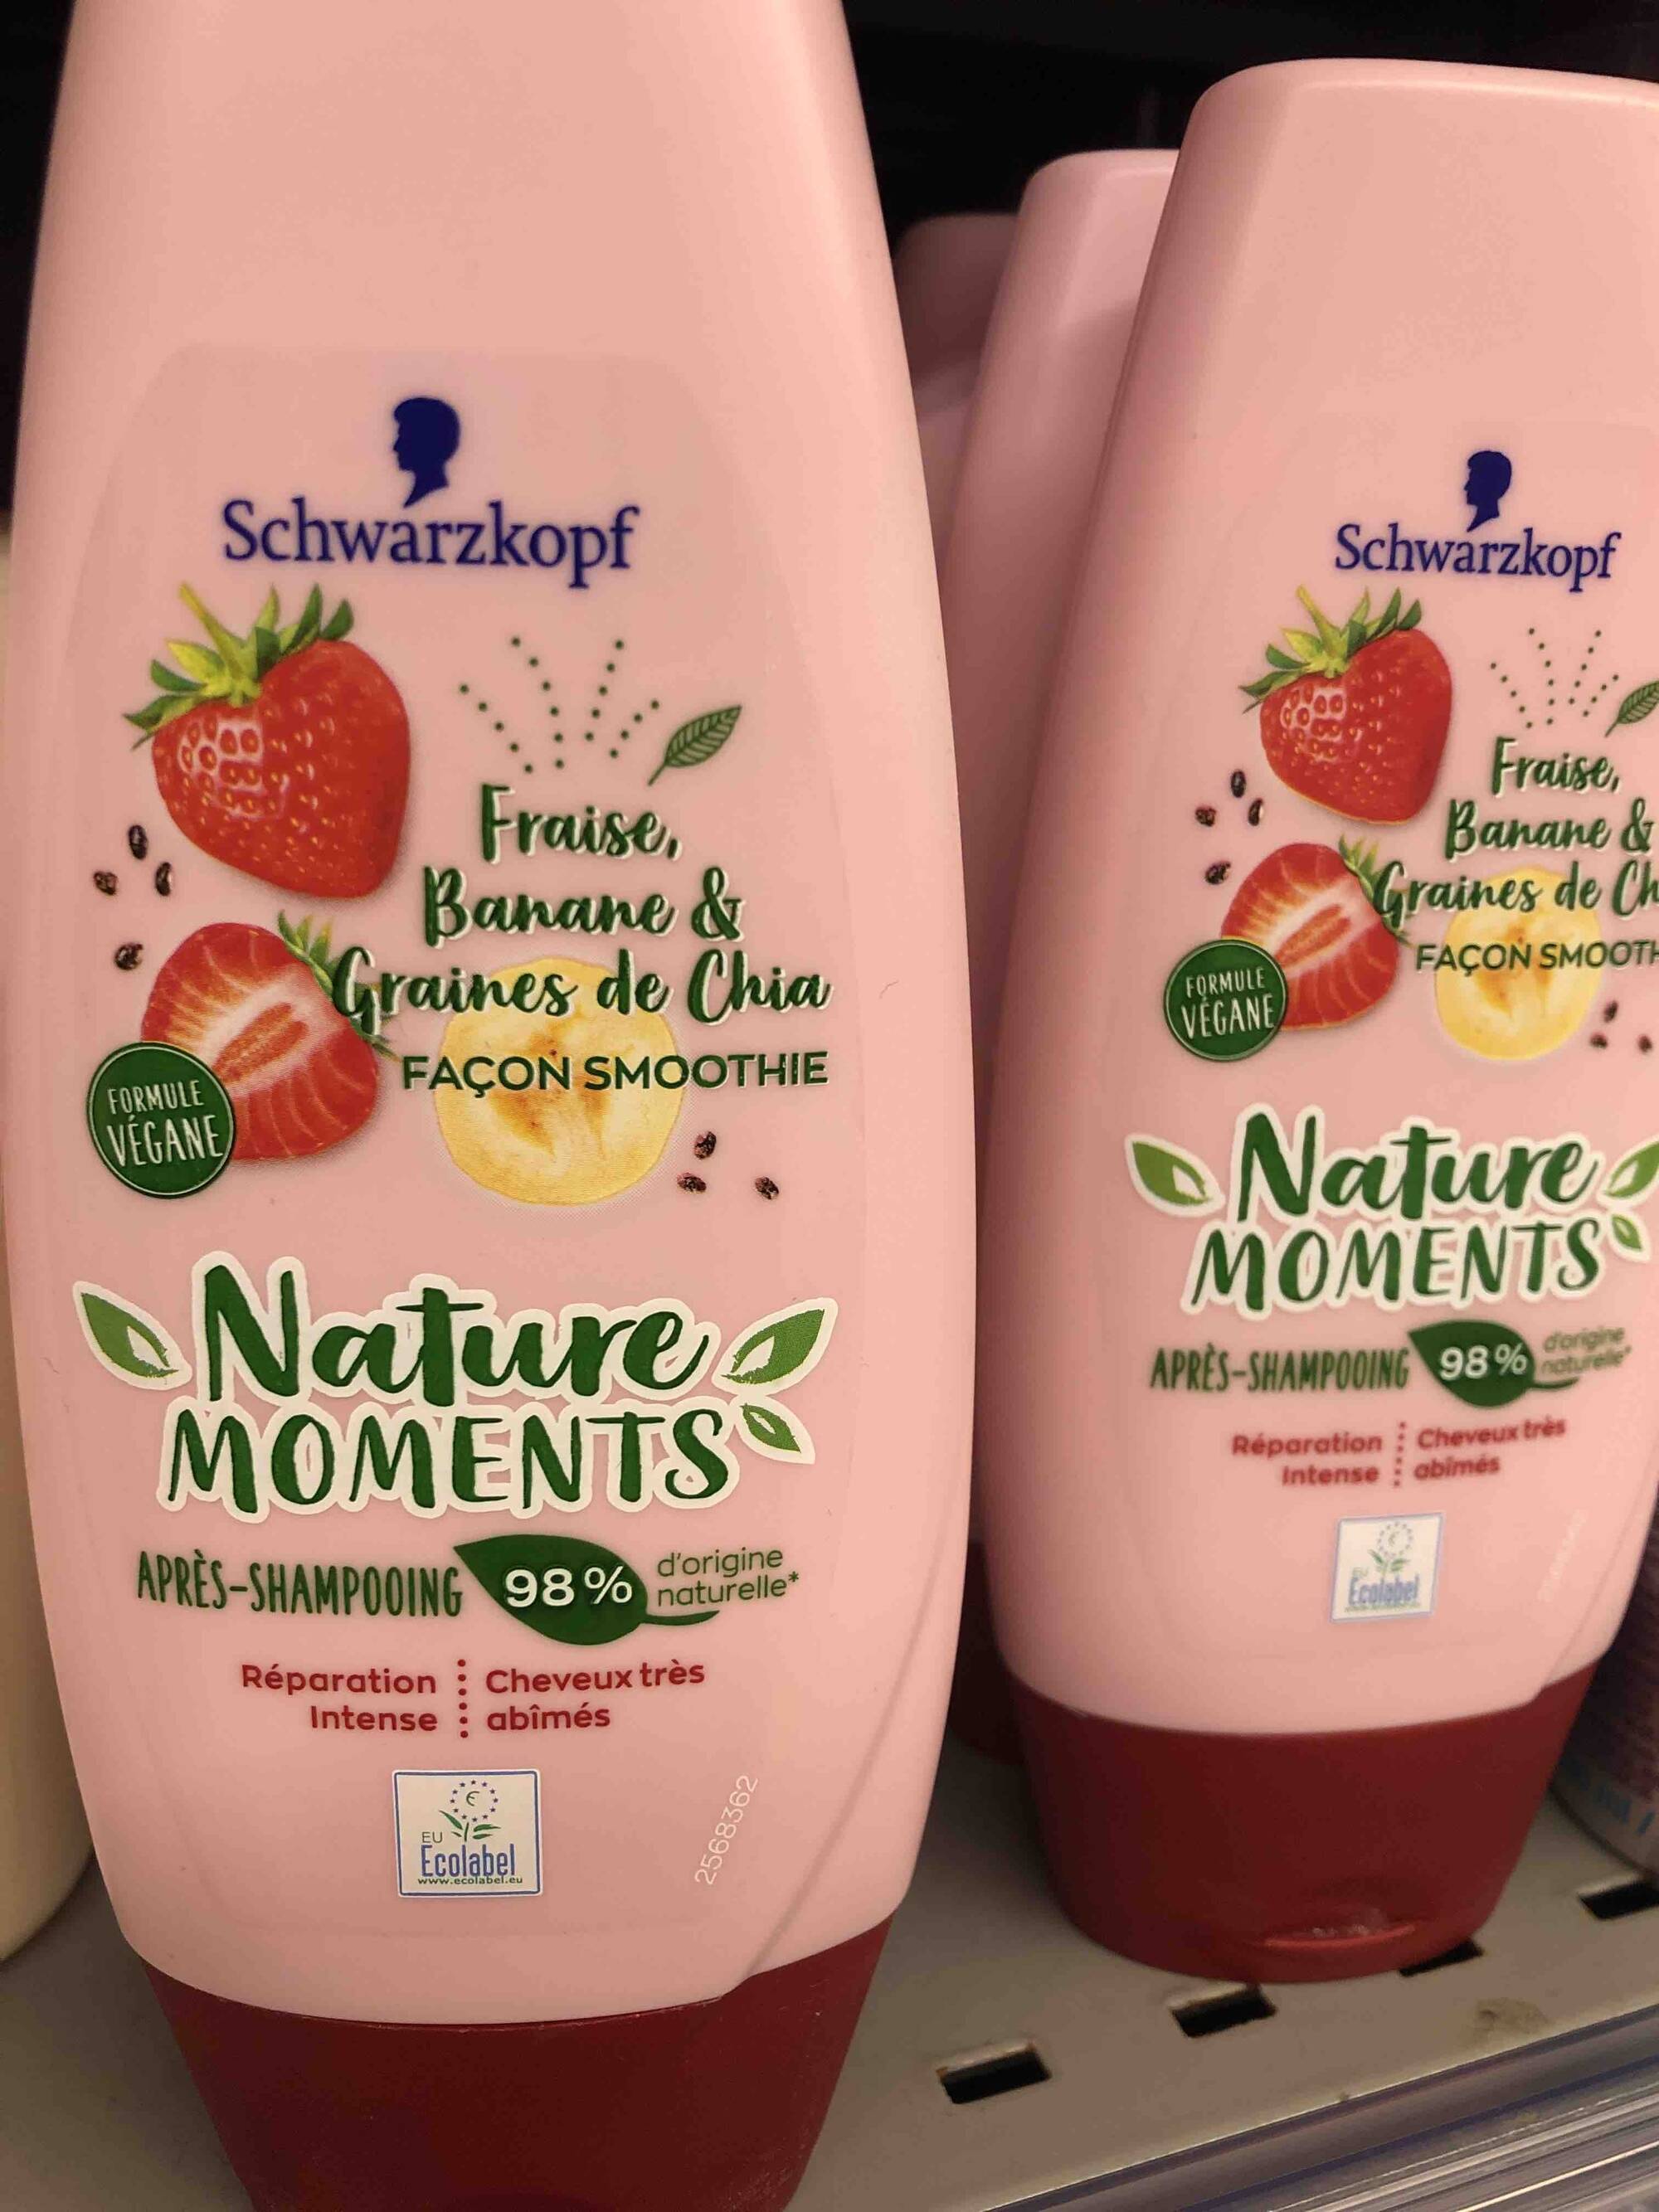 SCHWARKOPF - Nature moments - Après-shampooing fraise banane & graines de chia